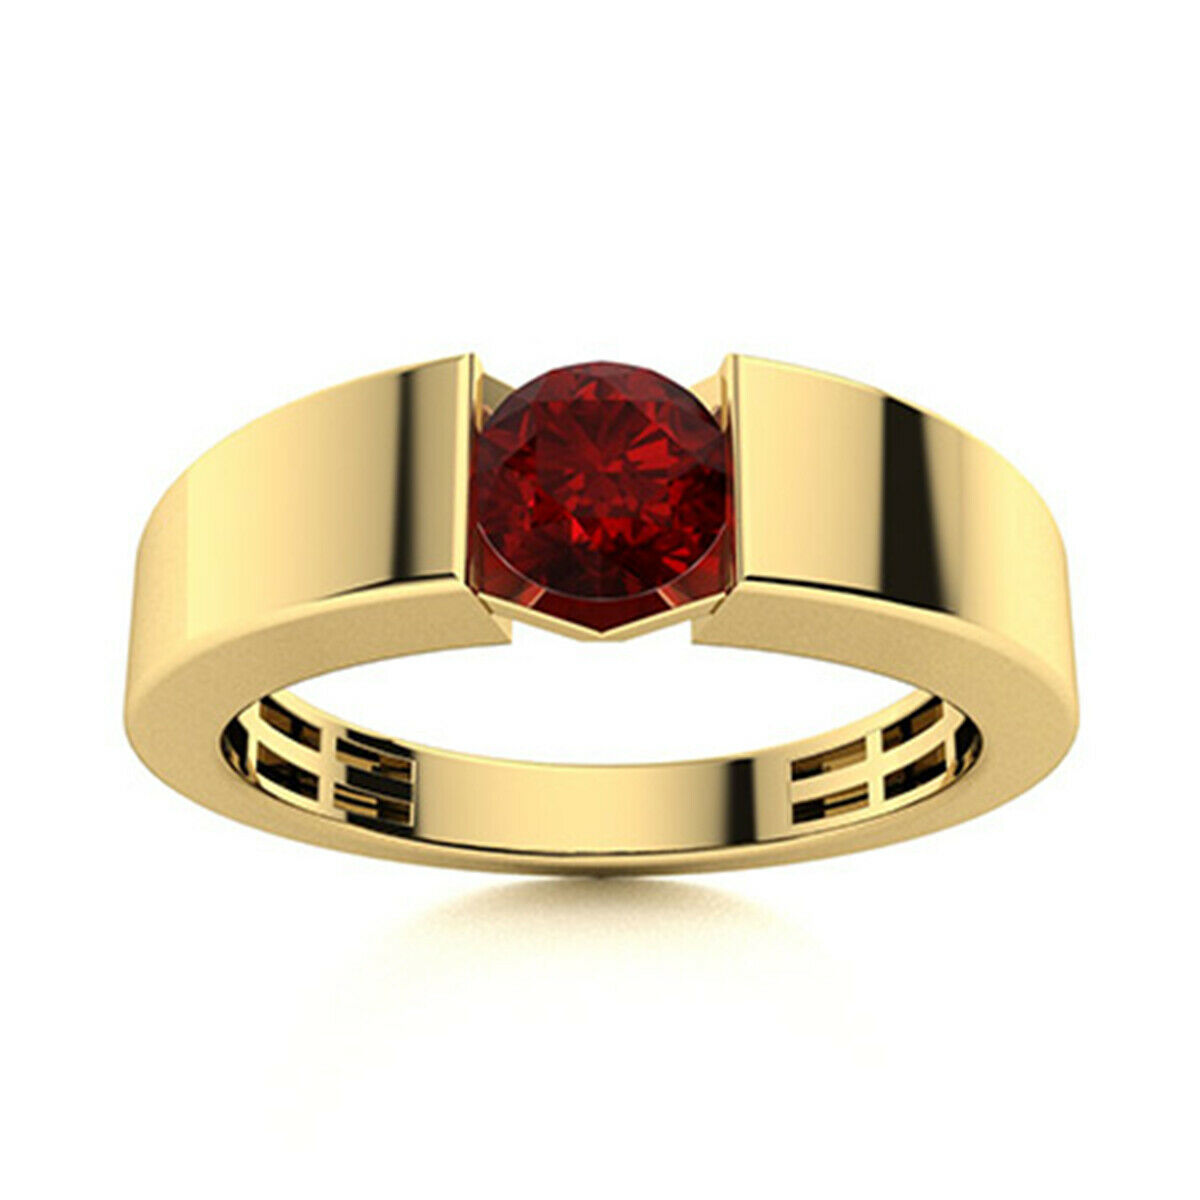 0.50 Ctw Round Garnet 9K Yellow Gold Handmade Ring Jewelry Gift